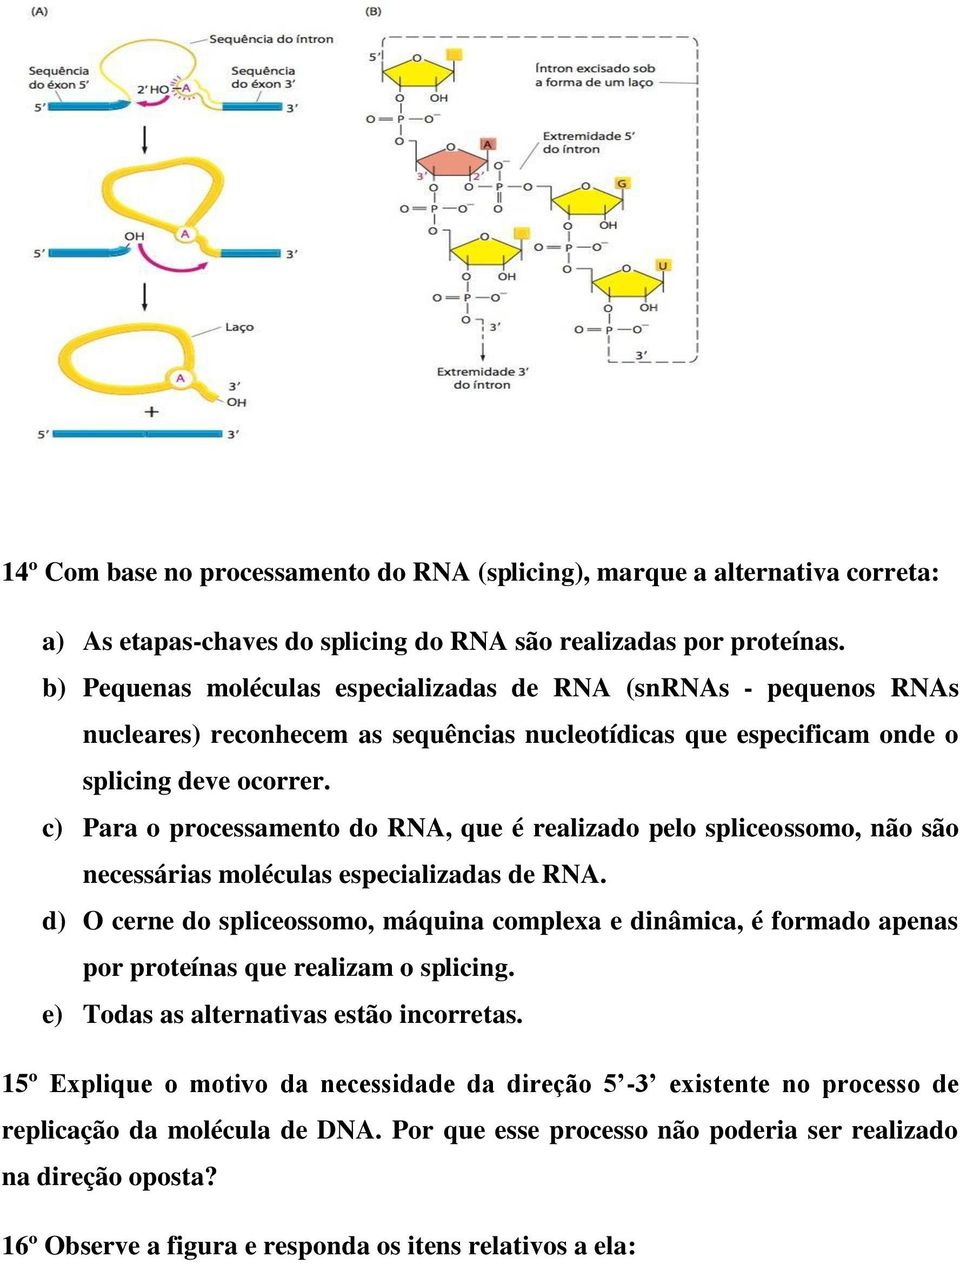 c) Para o processamento do RNA, que é realizado pelo spliceossomo, não são necessárias moléculas especializadas de RNA.